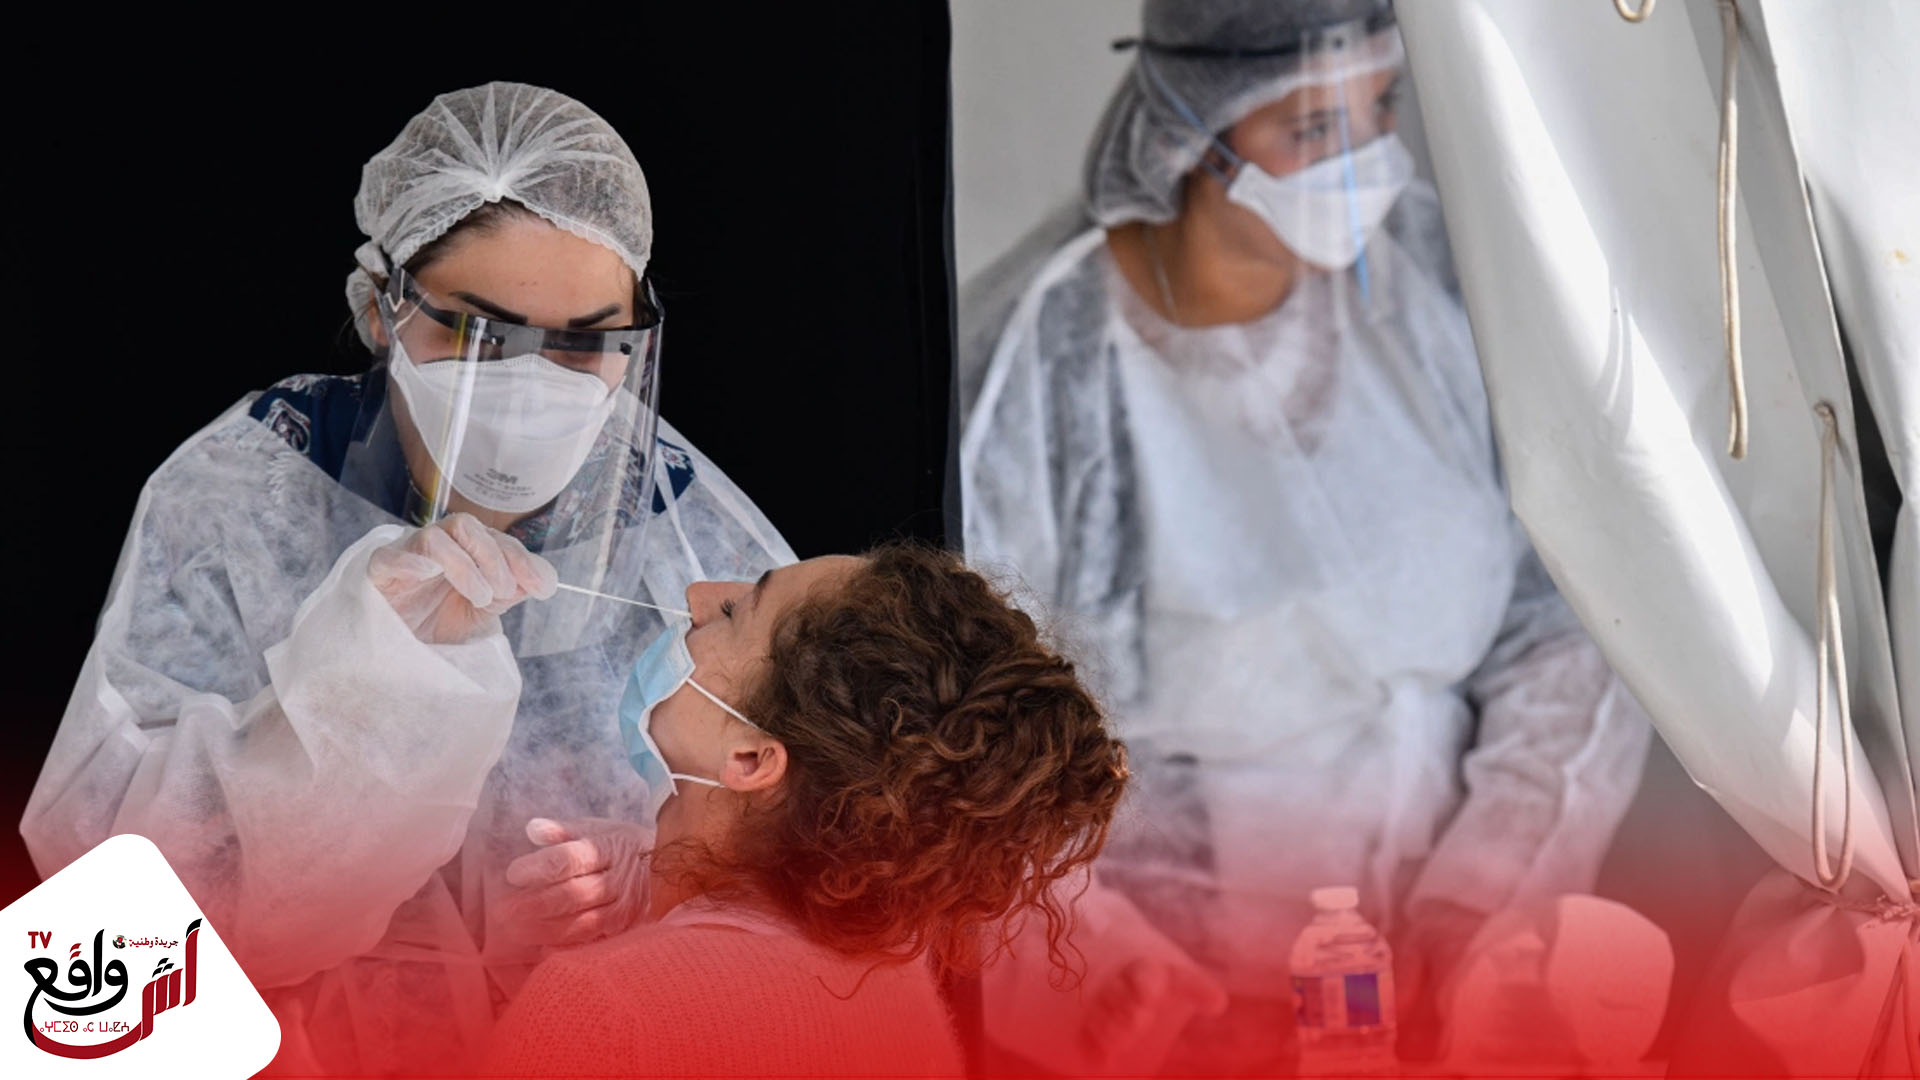 حصيلة جديدة.. المغرب يسجل تراجعا في معدل الوفيات جراء فيروس كورونا